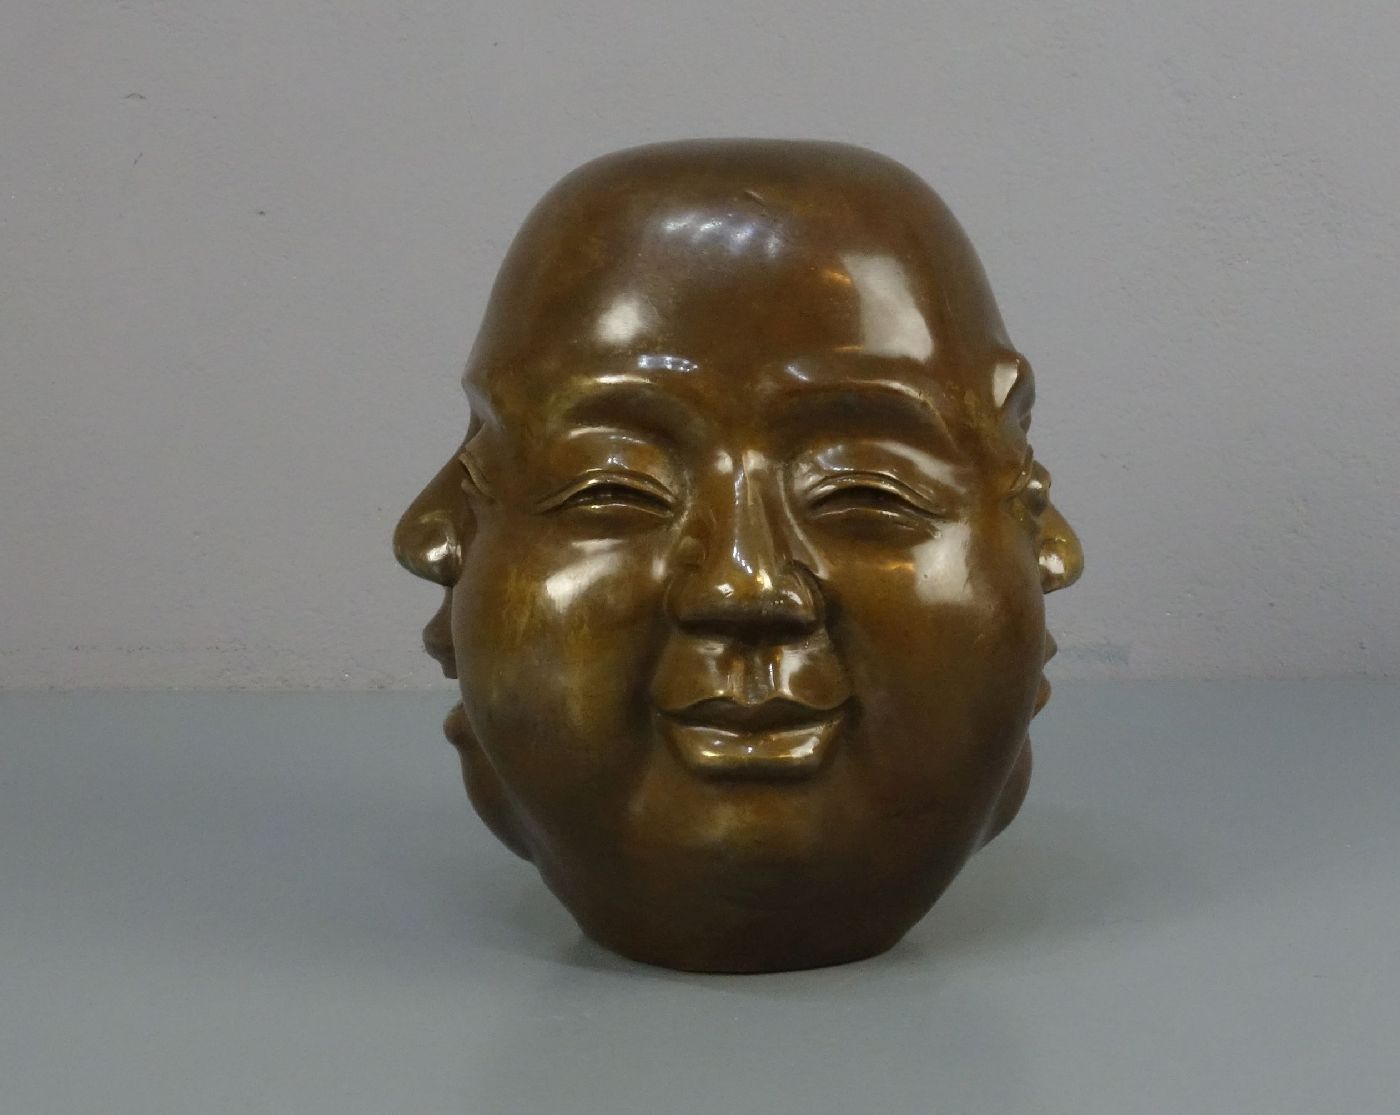 CHINESISCHER BILDHAUER des 20. Jh., Skulptur / sculpture: "Kopf mit vier Gesichtern", Bronze, - Bild 2 aus 5